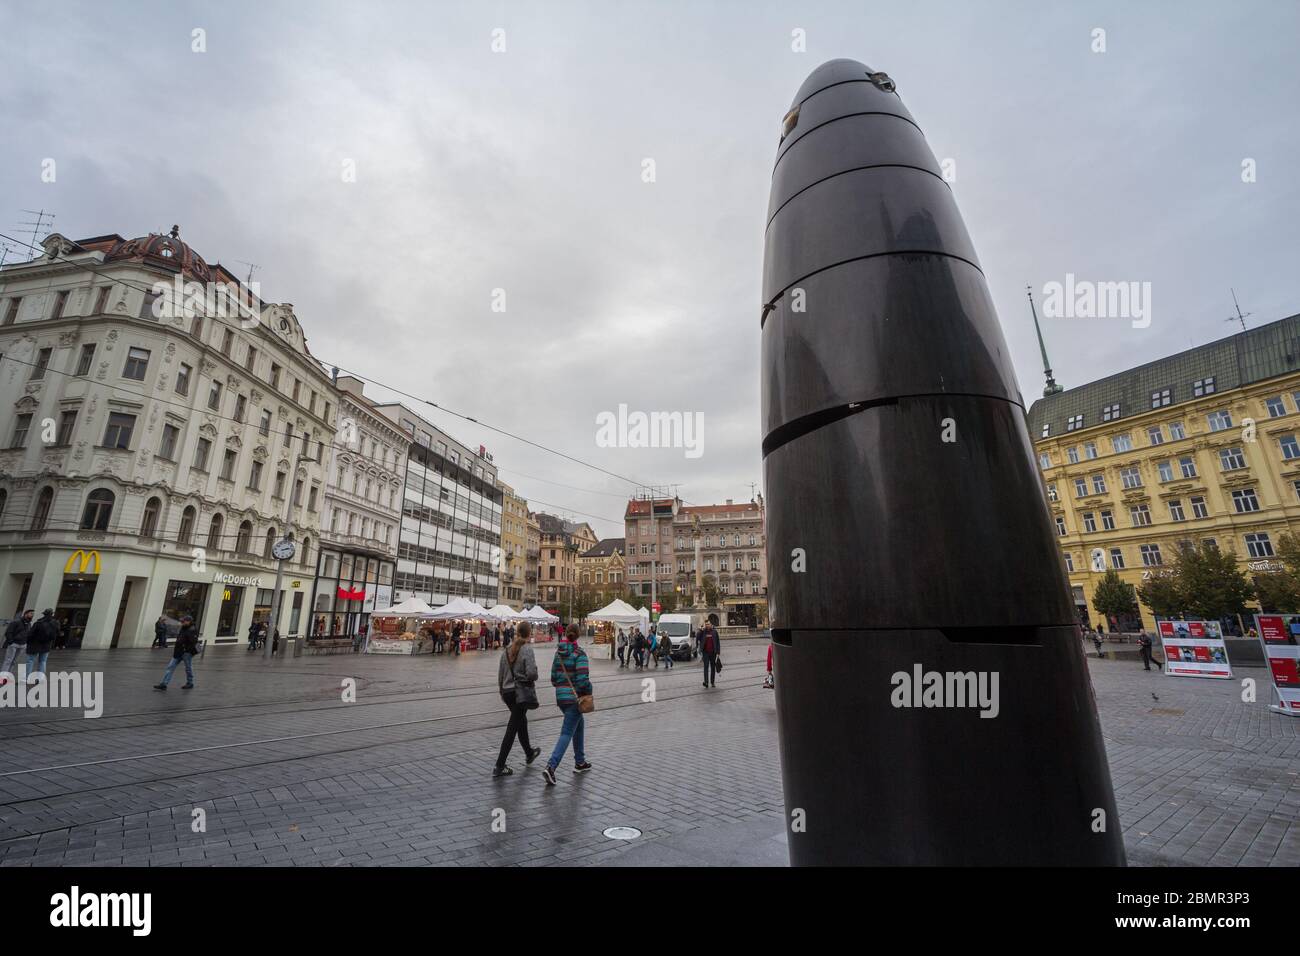 BRNO, République tchèque - 5 novembre, 2019 : horloge astronomique, également appelé Liege orloj, sur Namesti Svobody square, la place principale et le symbole de la cit Banque D'Images